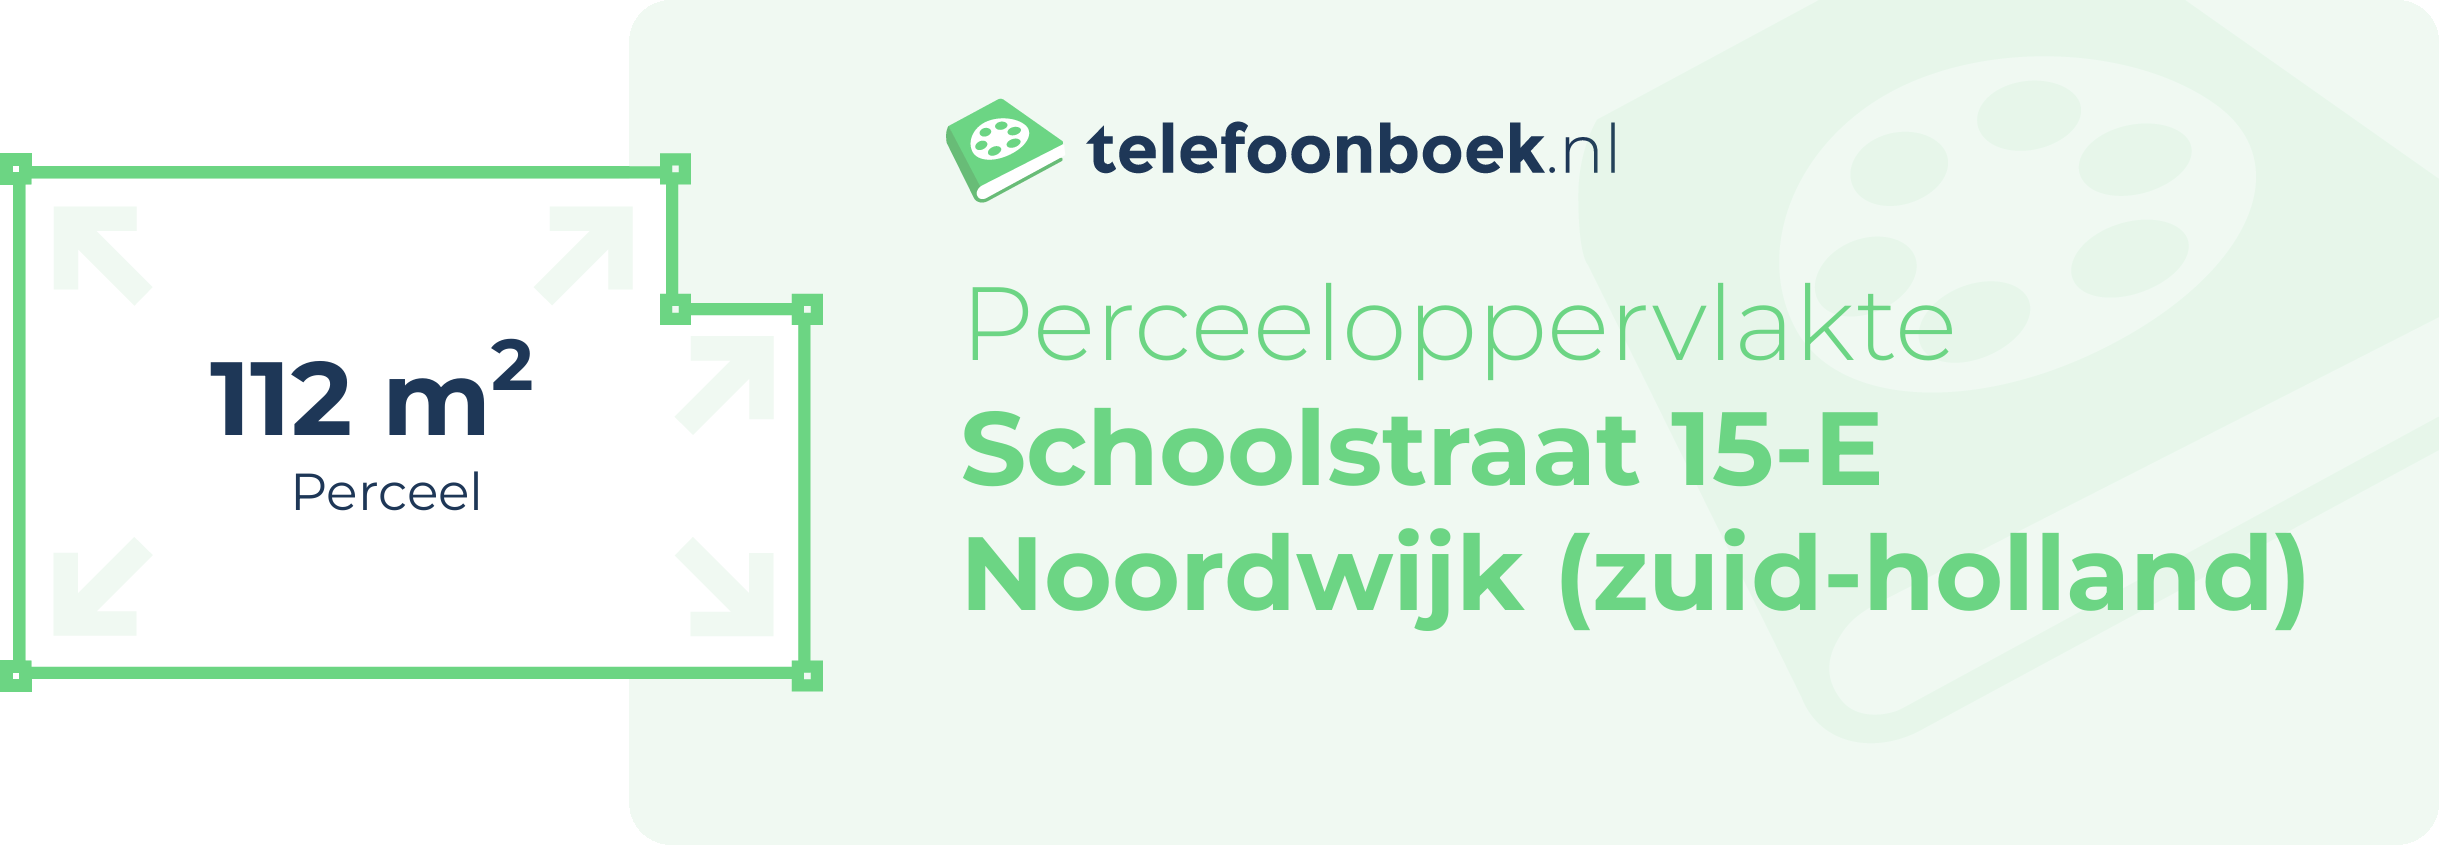 Perceeloppervlakte Schoolstraat 15-E Noordwijk (Zuid-Holland)